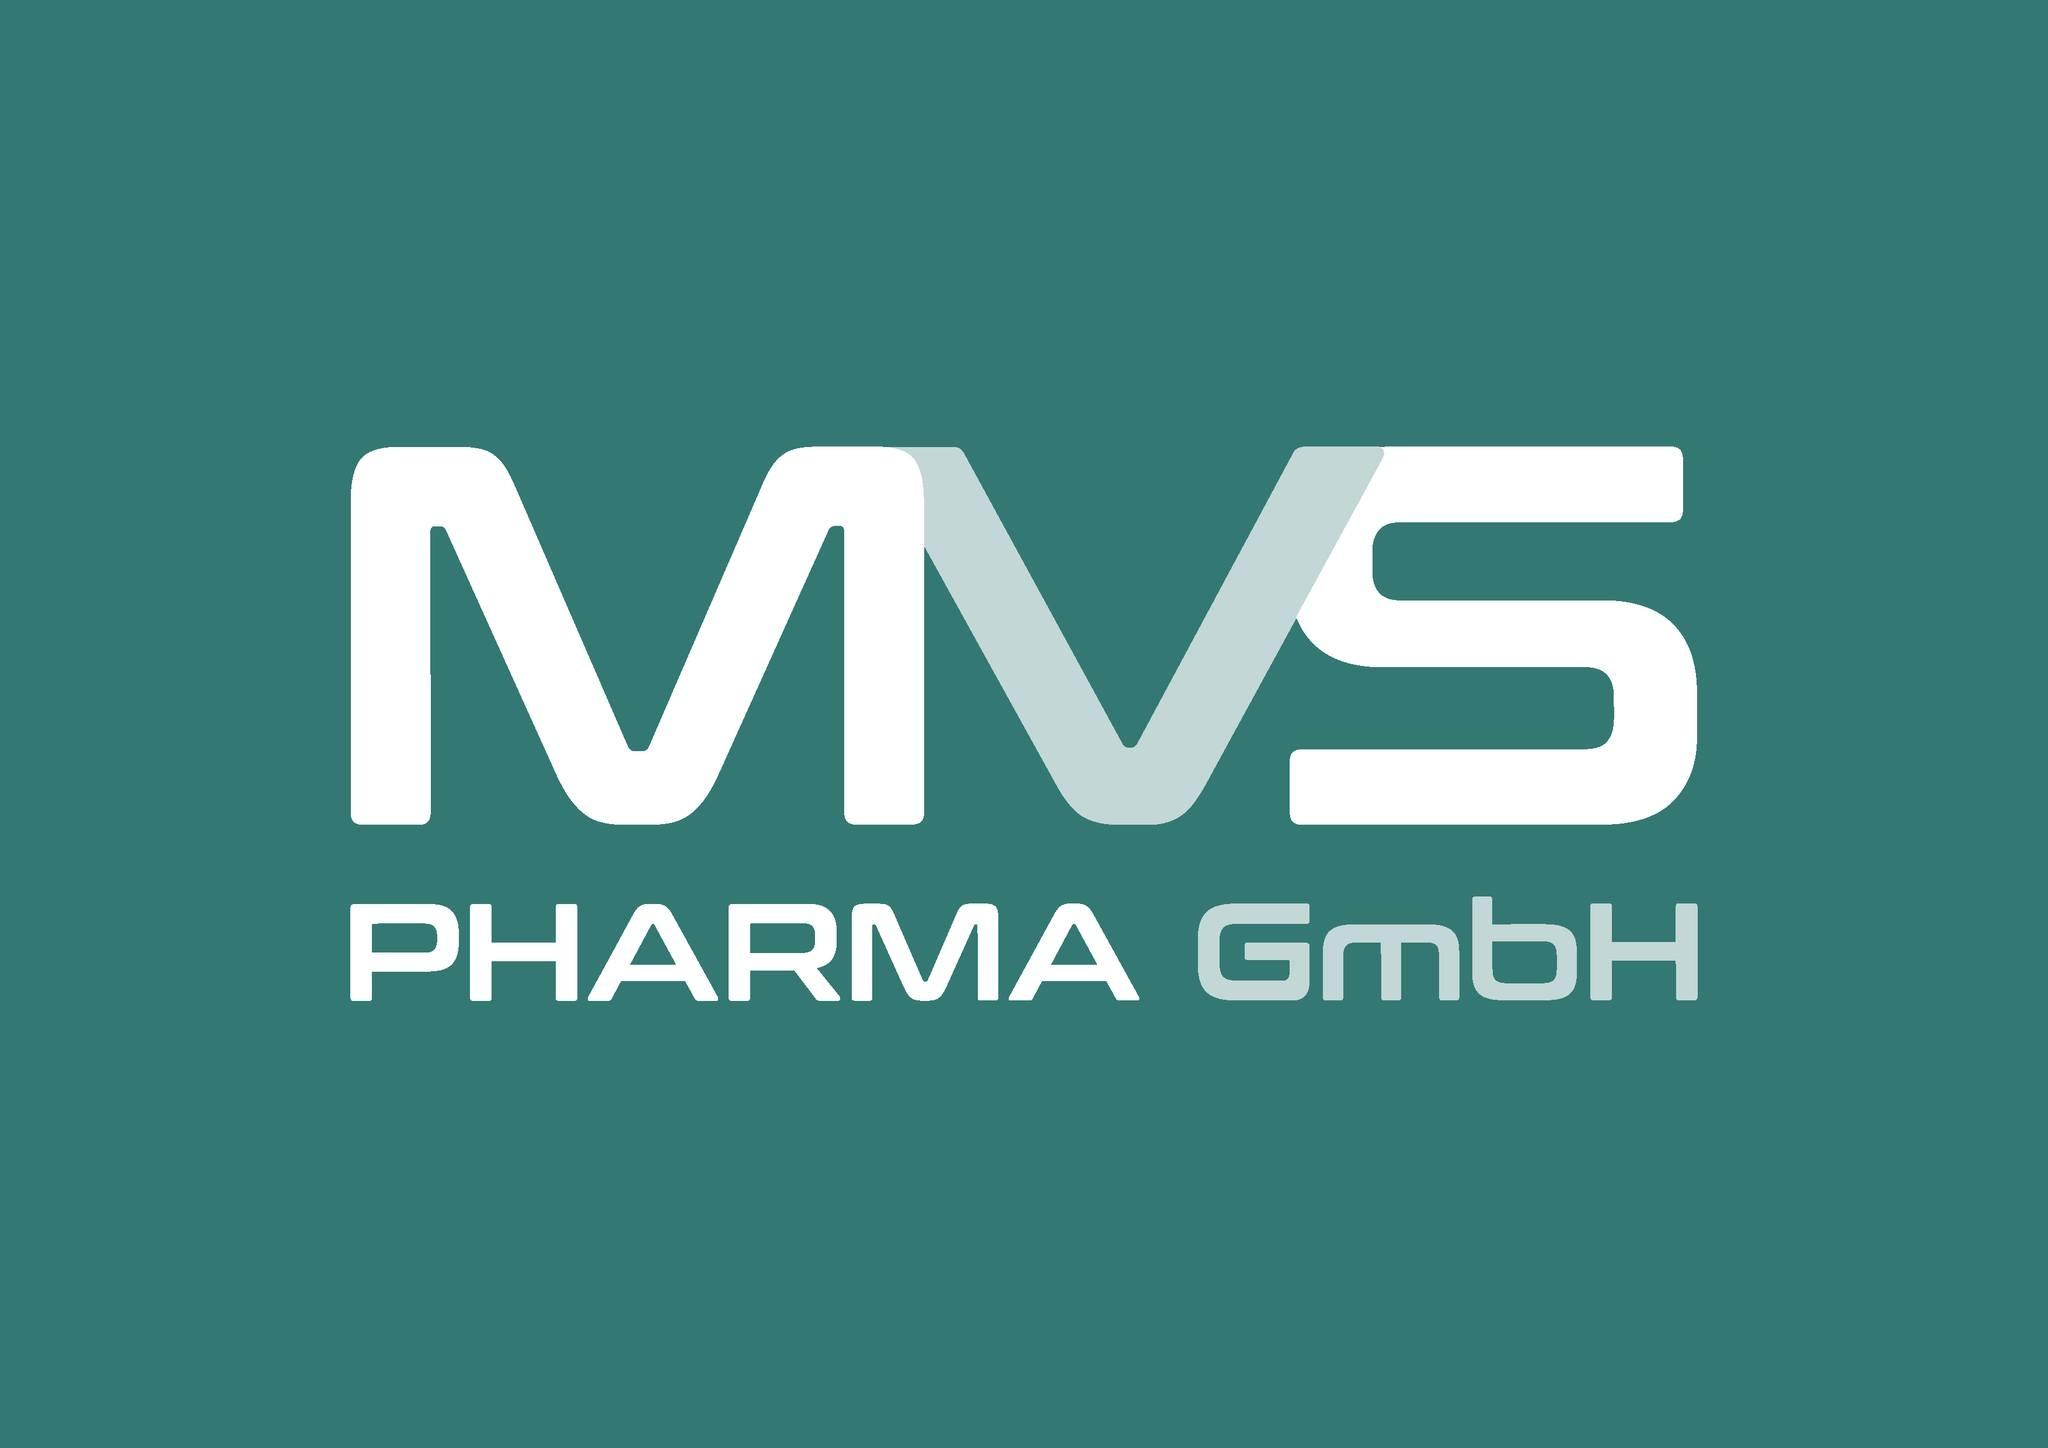 MVS Pharma GmbH / startup from Leinfelden-Echterdingen / Background